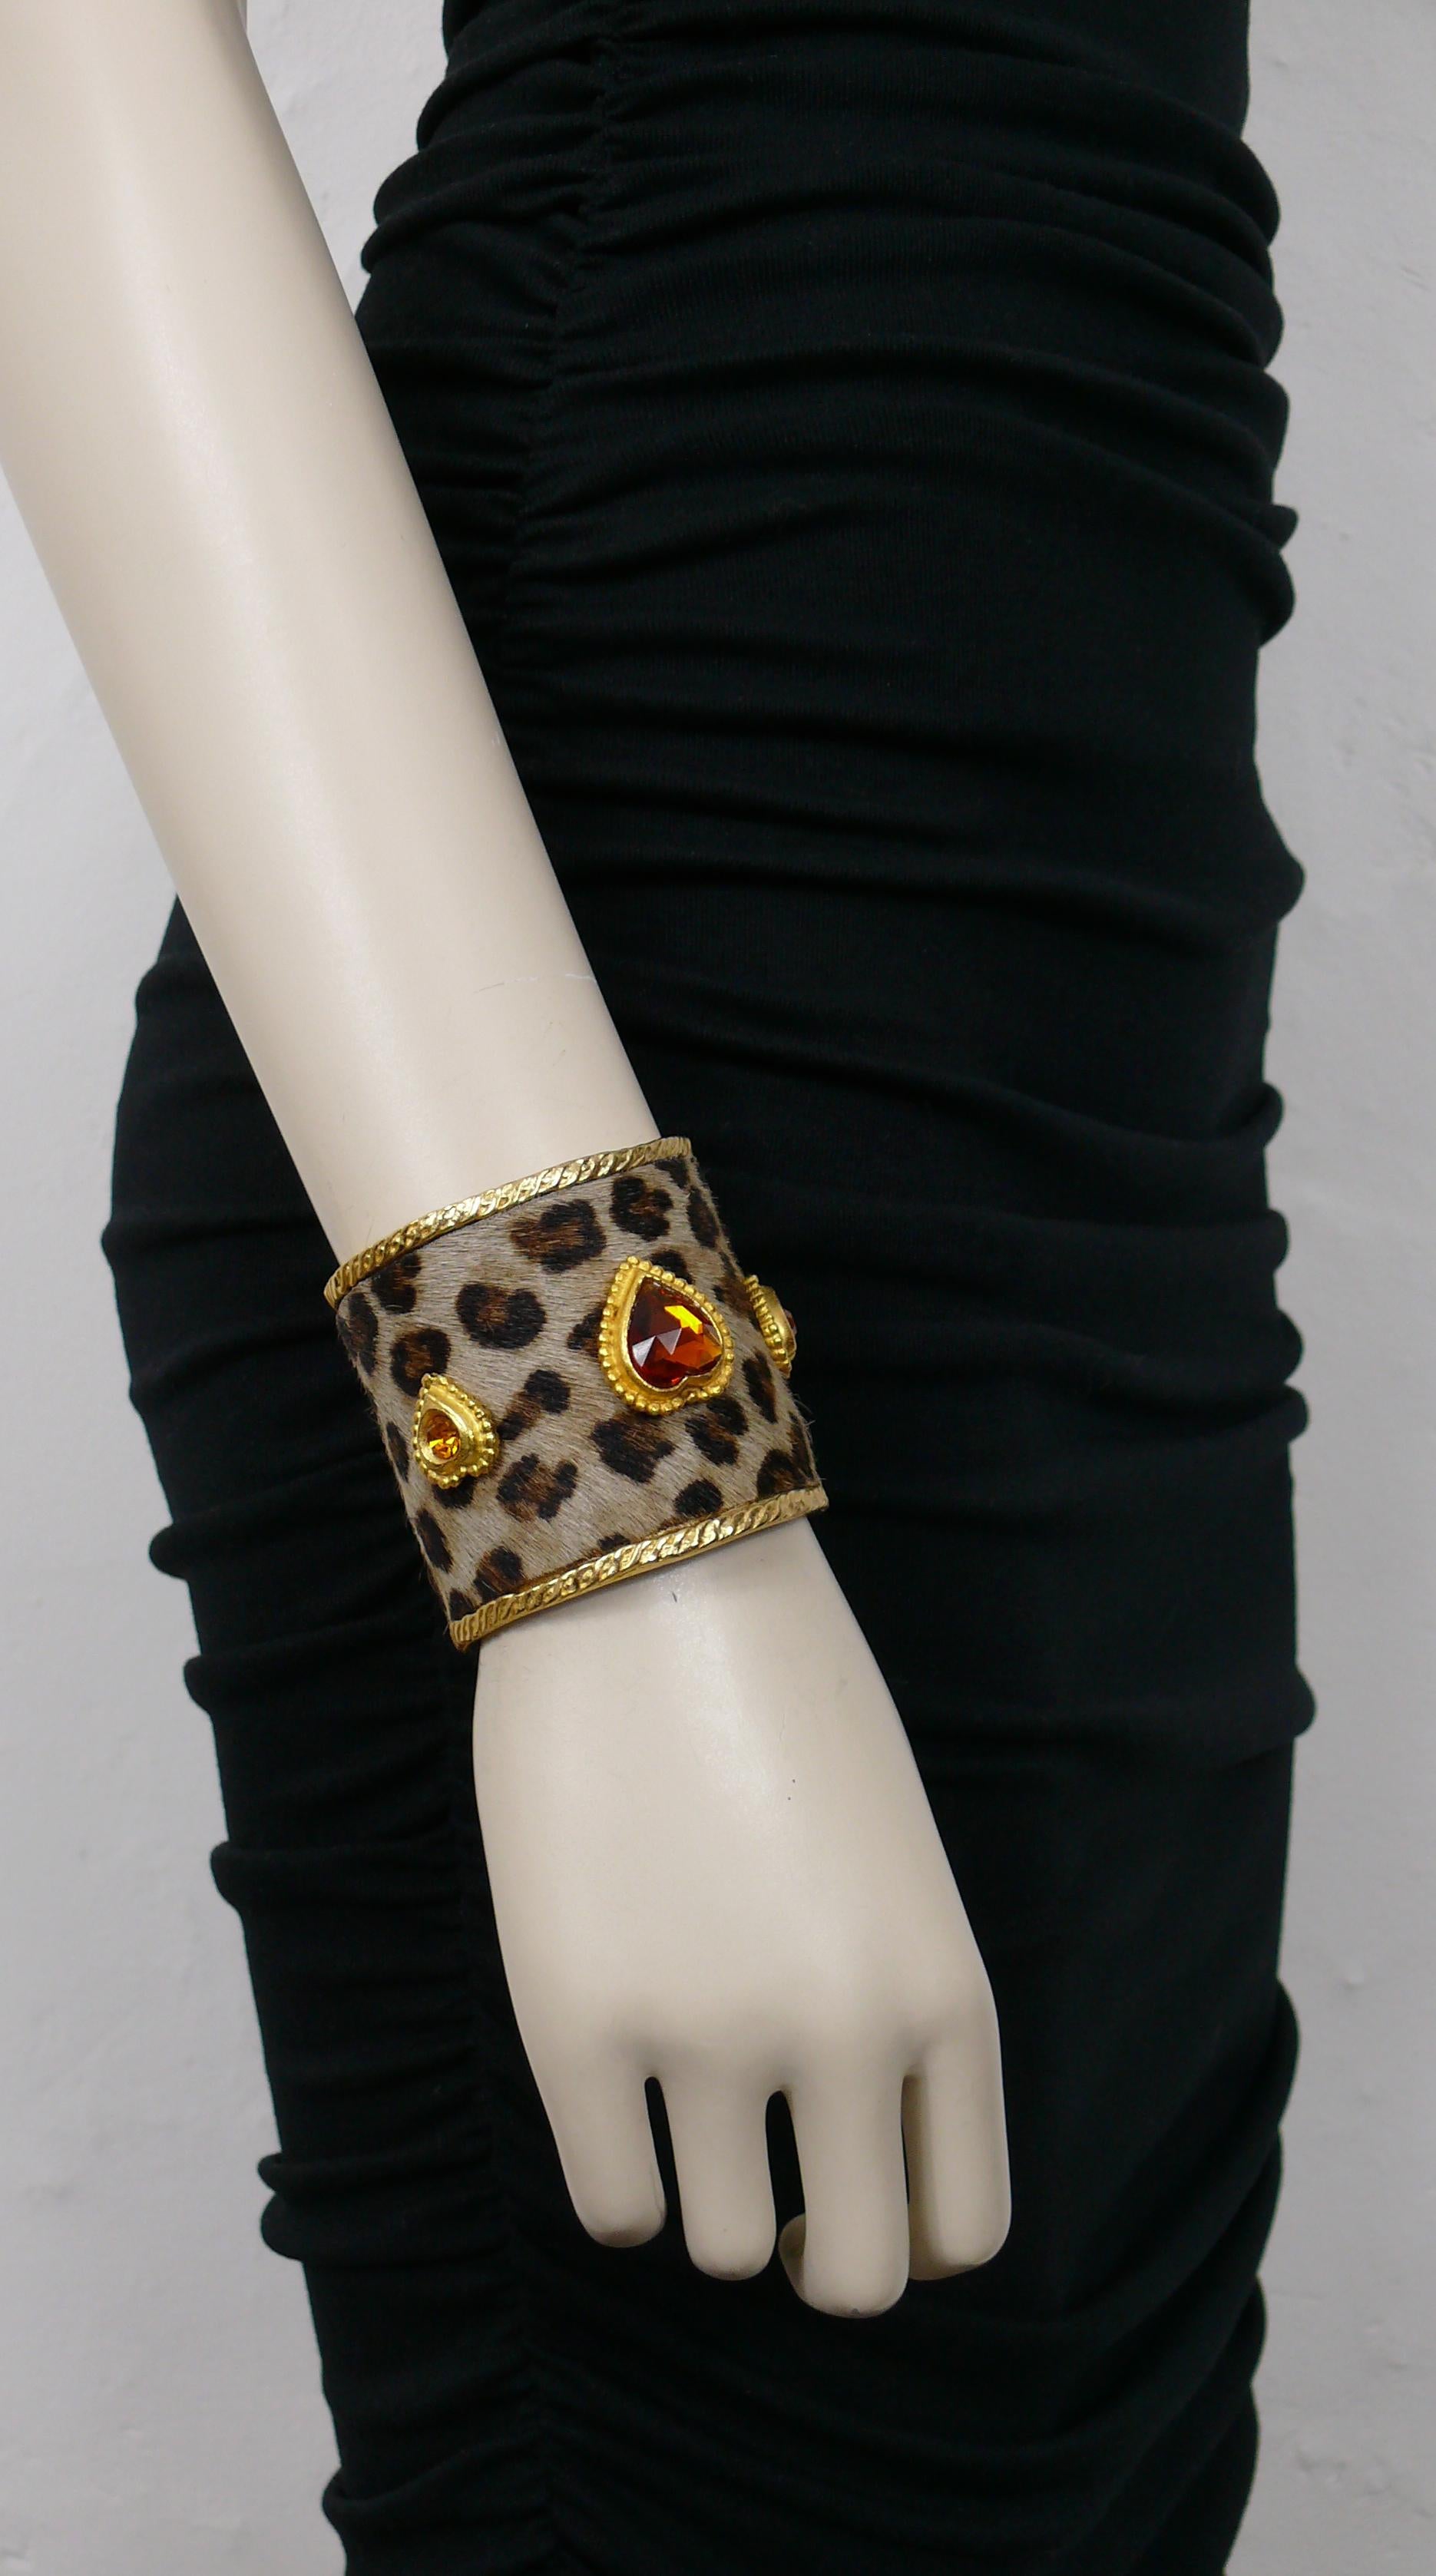 Bracelet manchette EDOUARD RAMBAUD vintage en or, avec une fausse peau de léopard et trois cœurs en or ornés de cristaux.

Gaufré EDOUARD RAMBAUD Paris.

Mesures indicatives : circonférence intérieure d'environ 16,34 cm (6,43 inches) / largeur